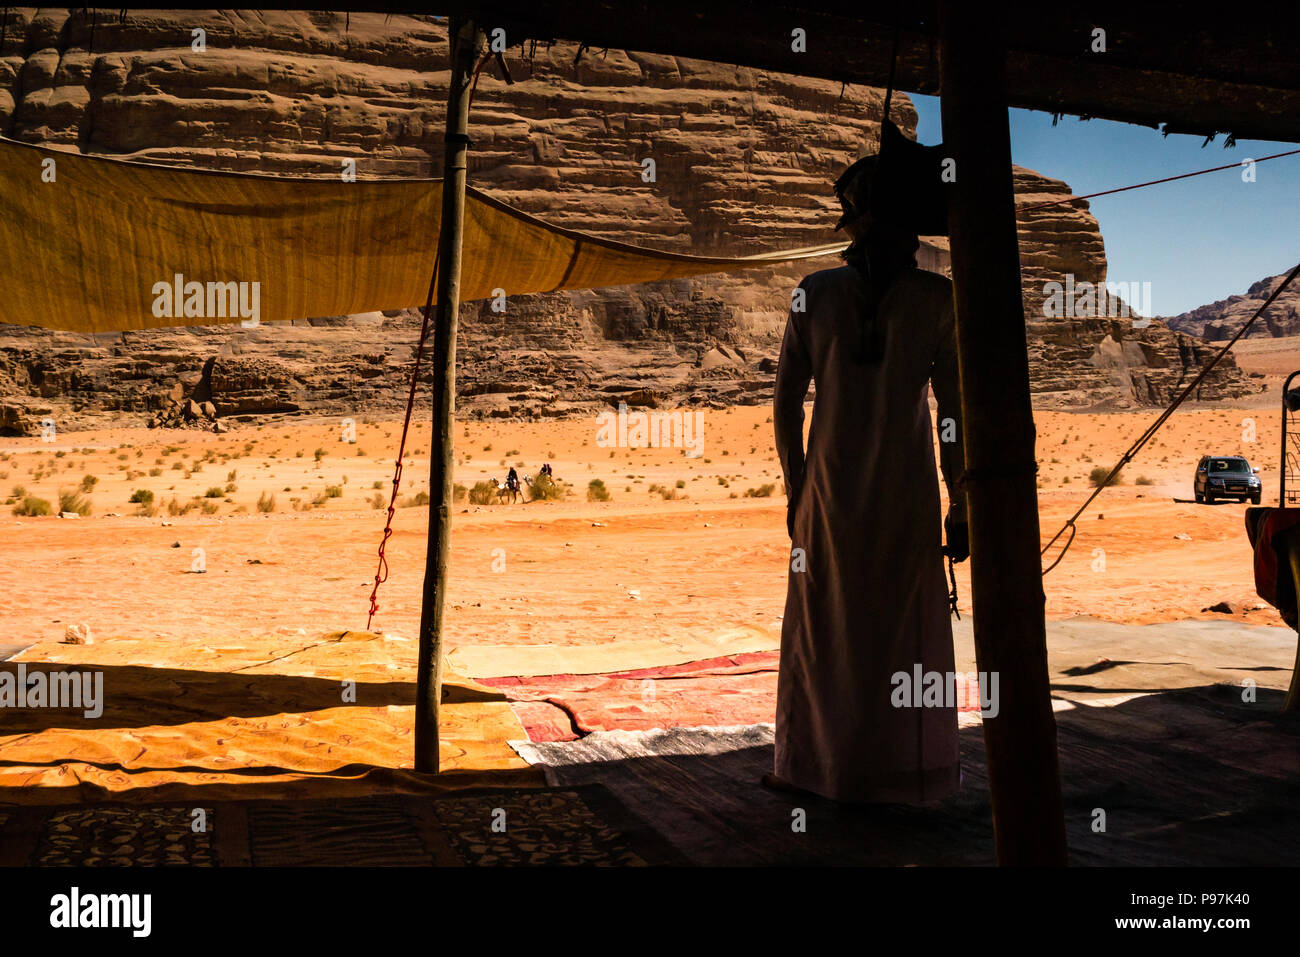 Arab Bedouin uomo attende i clienti, Accampamento Beduino, Wadi Rum vallata desertica, Giordania, Medio Oriente Foto Stock